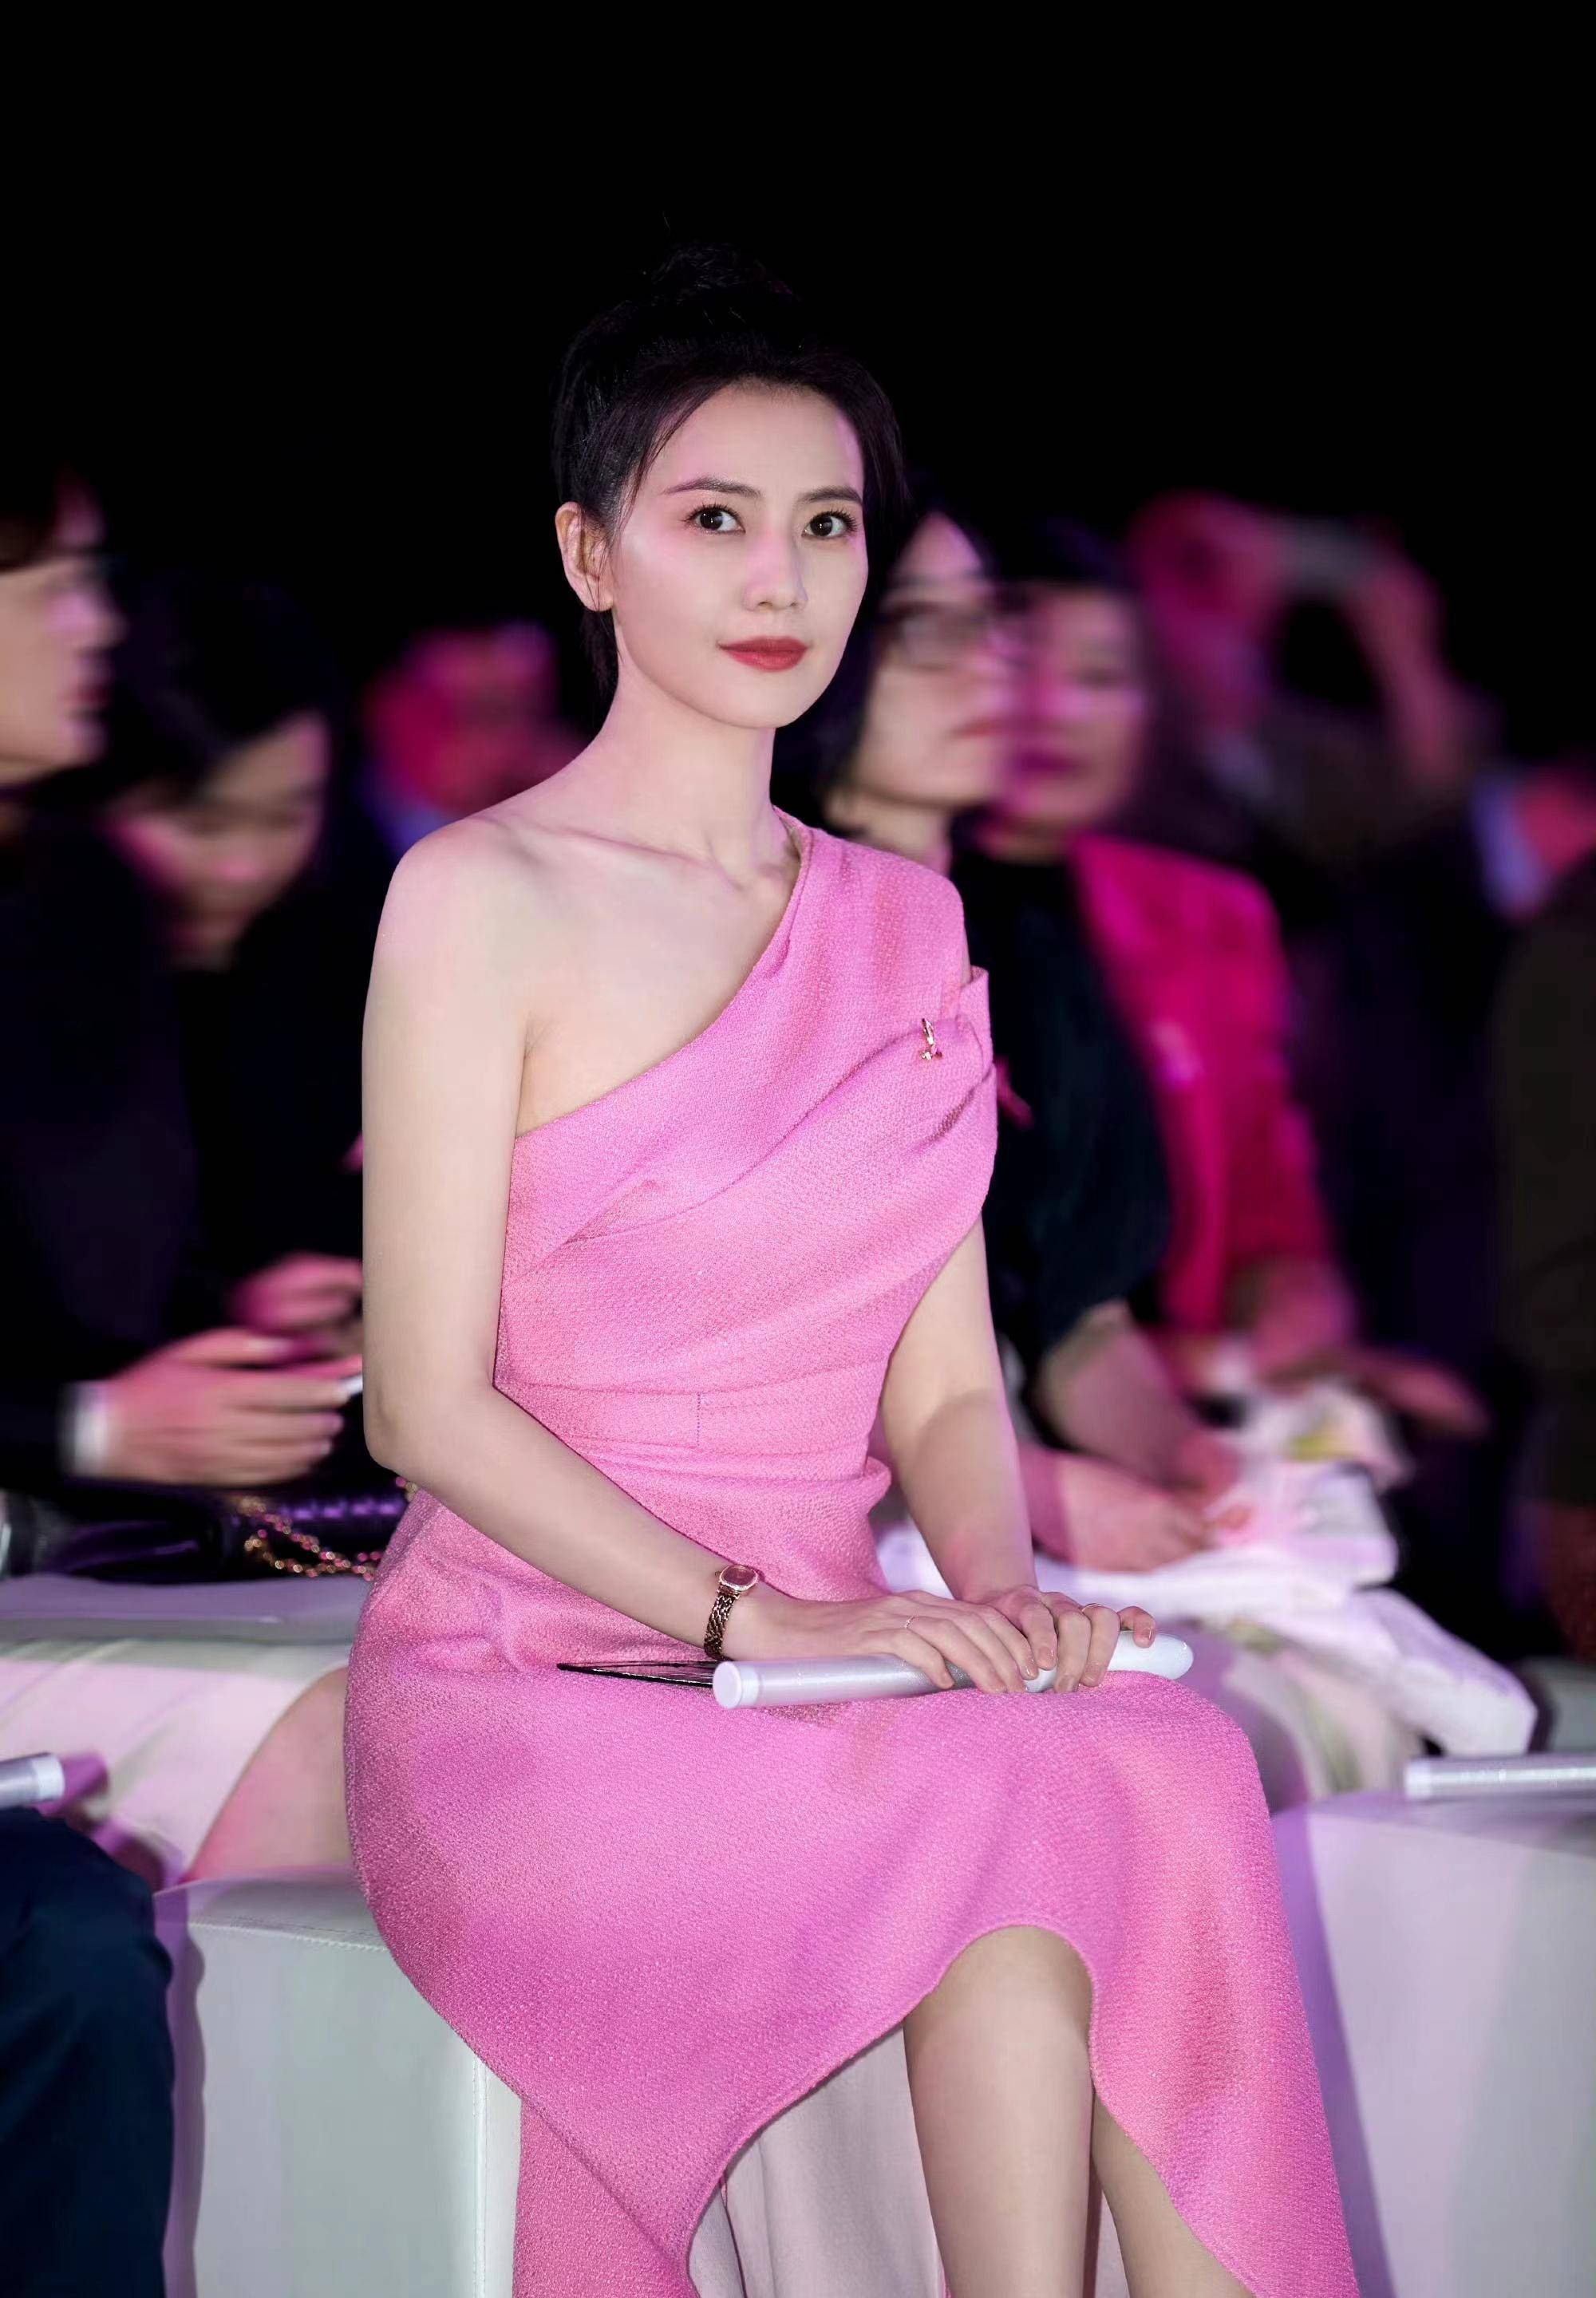 高圆圆身穿粉色飘逸玫瑰色连衣裙出席仪式,显得优雅又彰显年龄和个性!